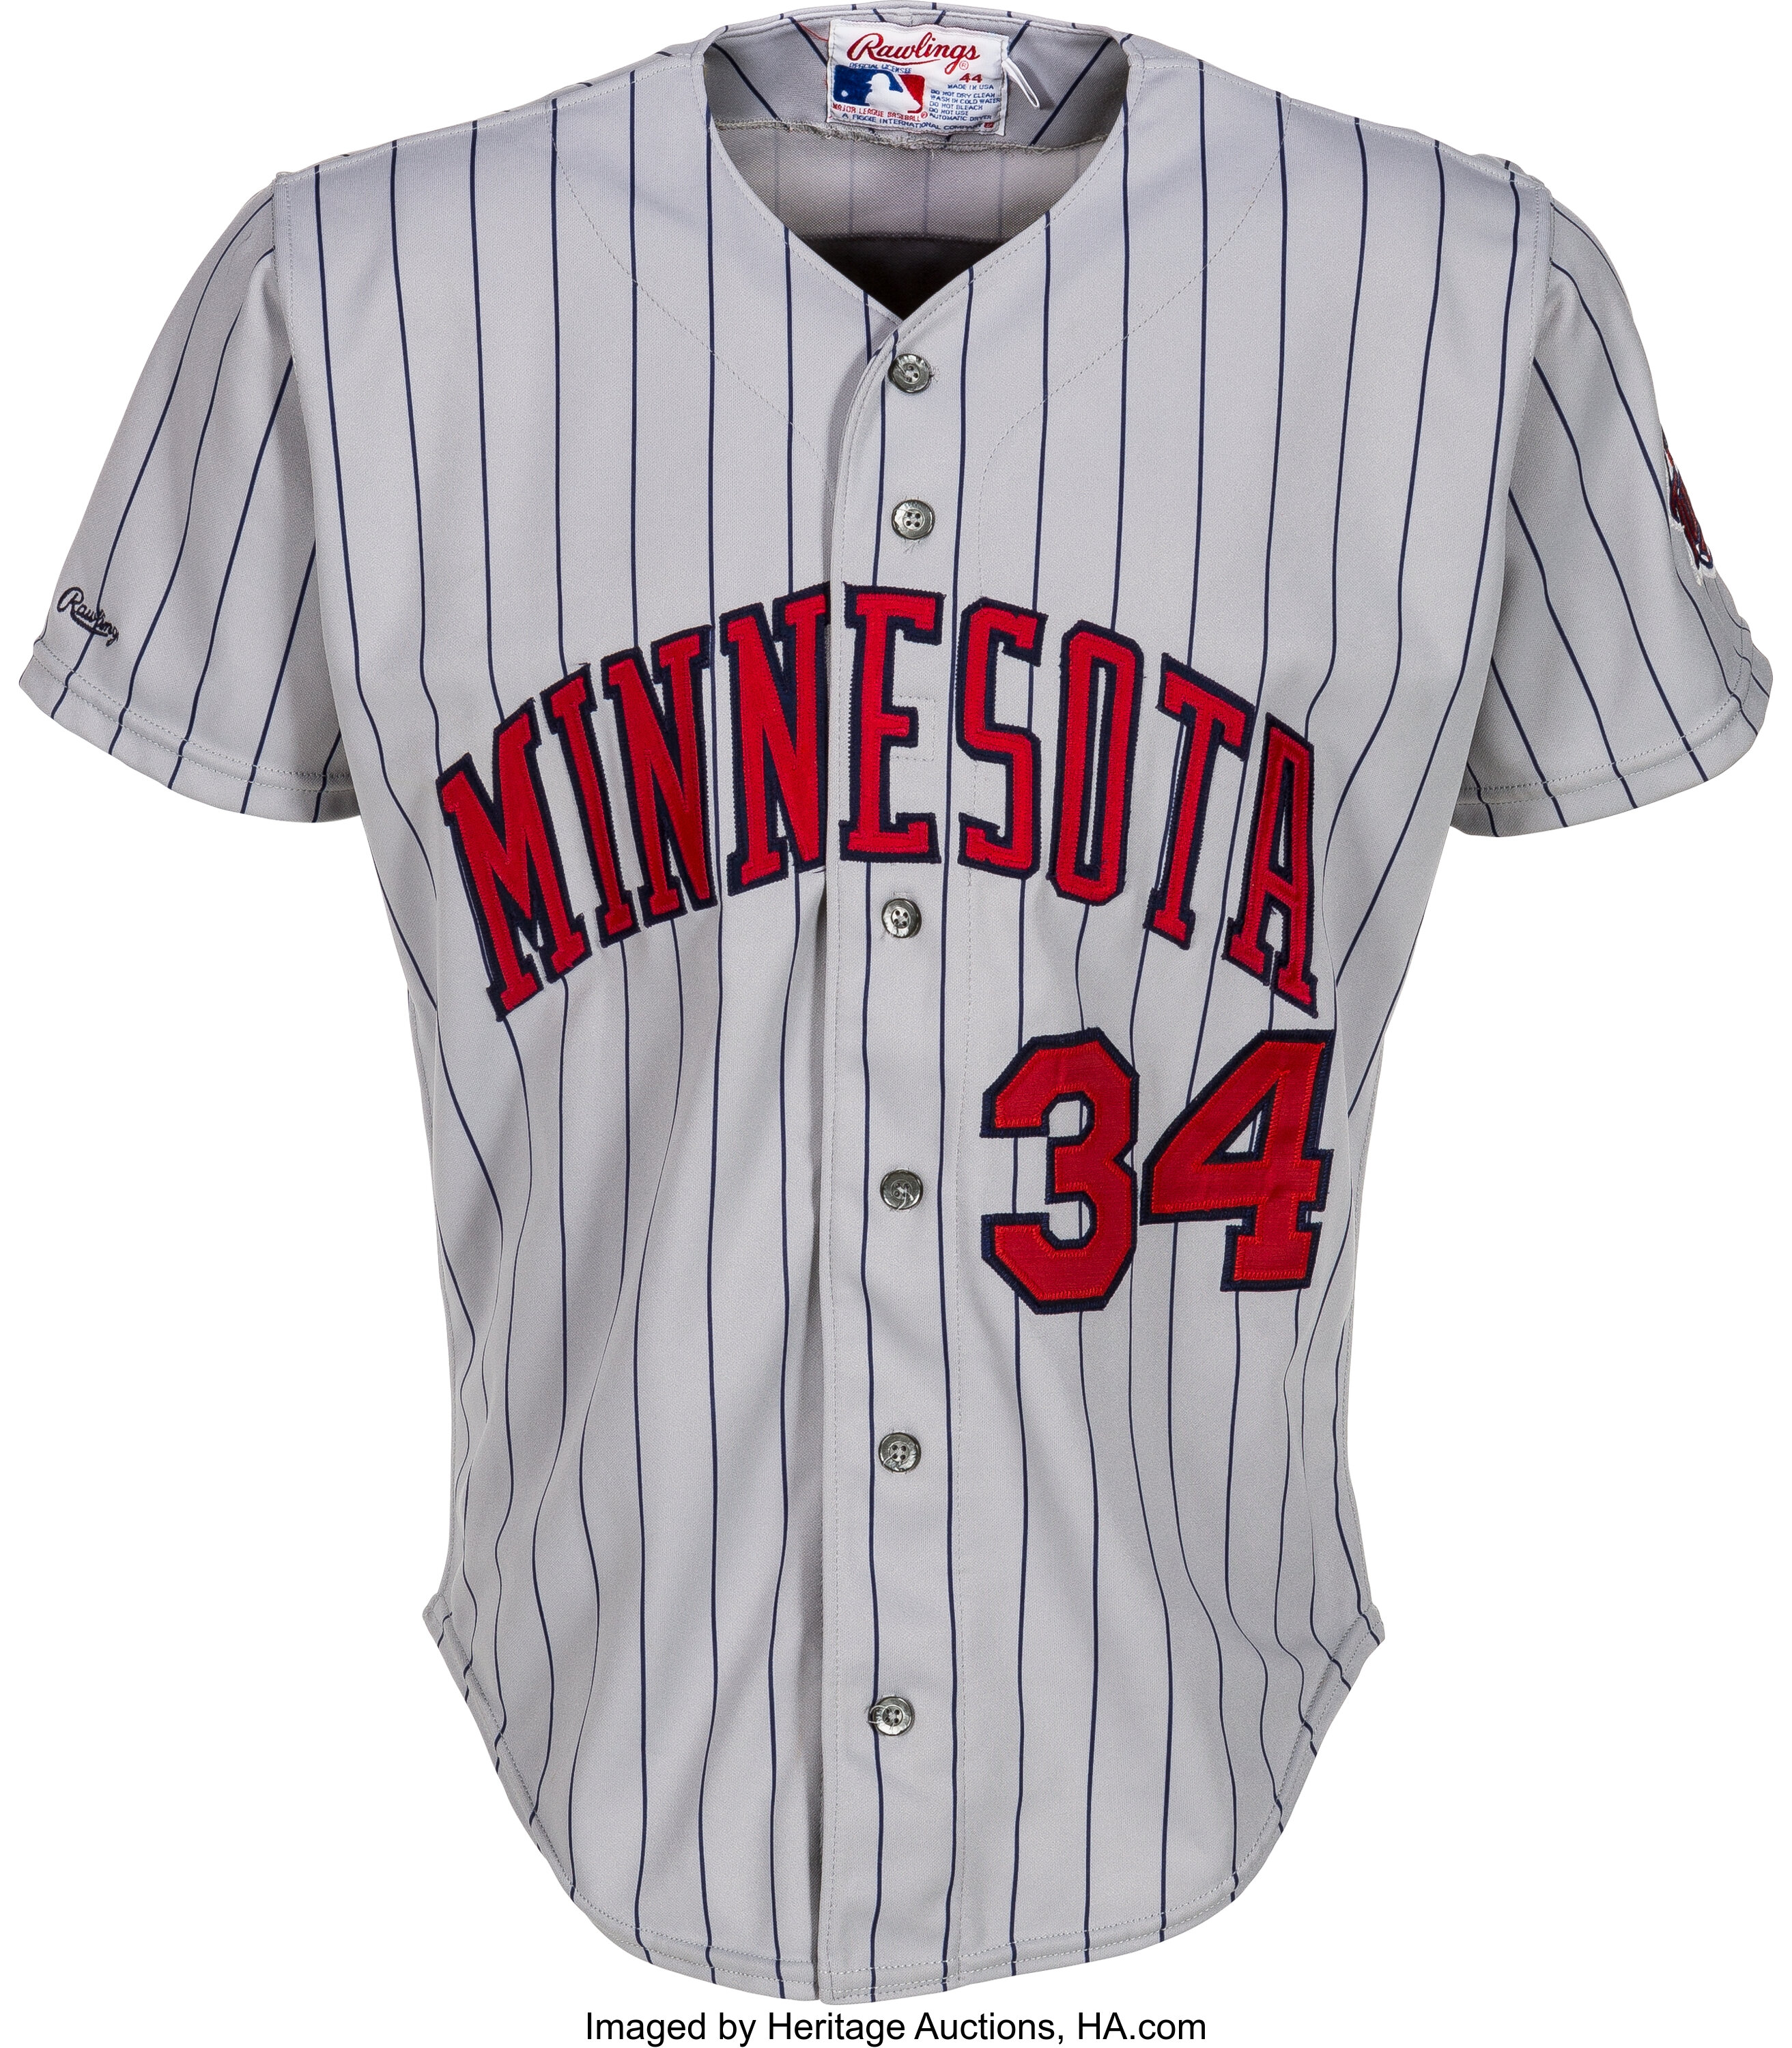 Kirby Puckett MLB Fan Jerseys for sale